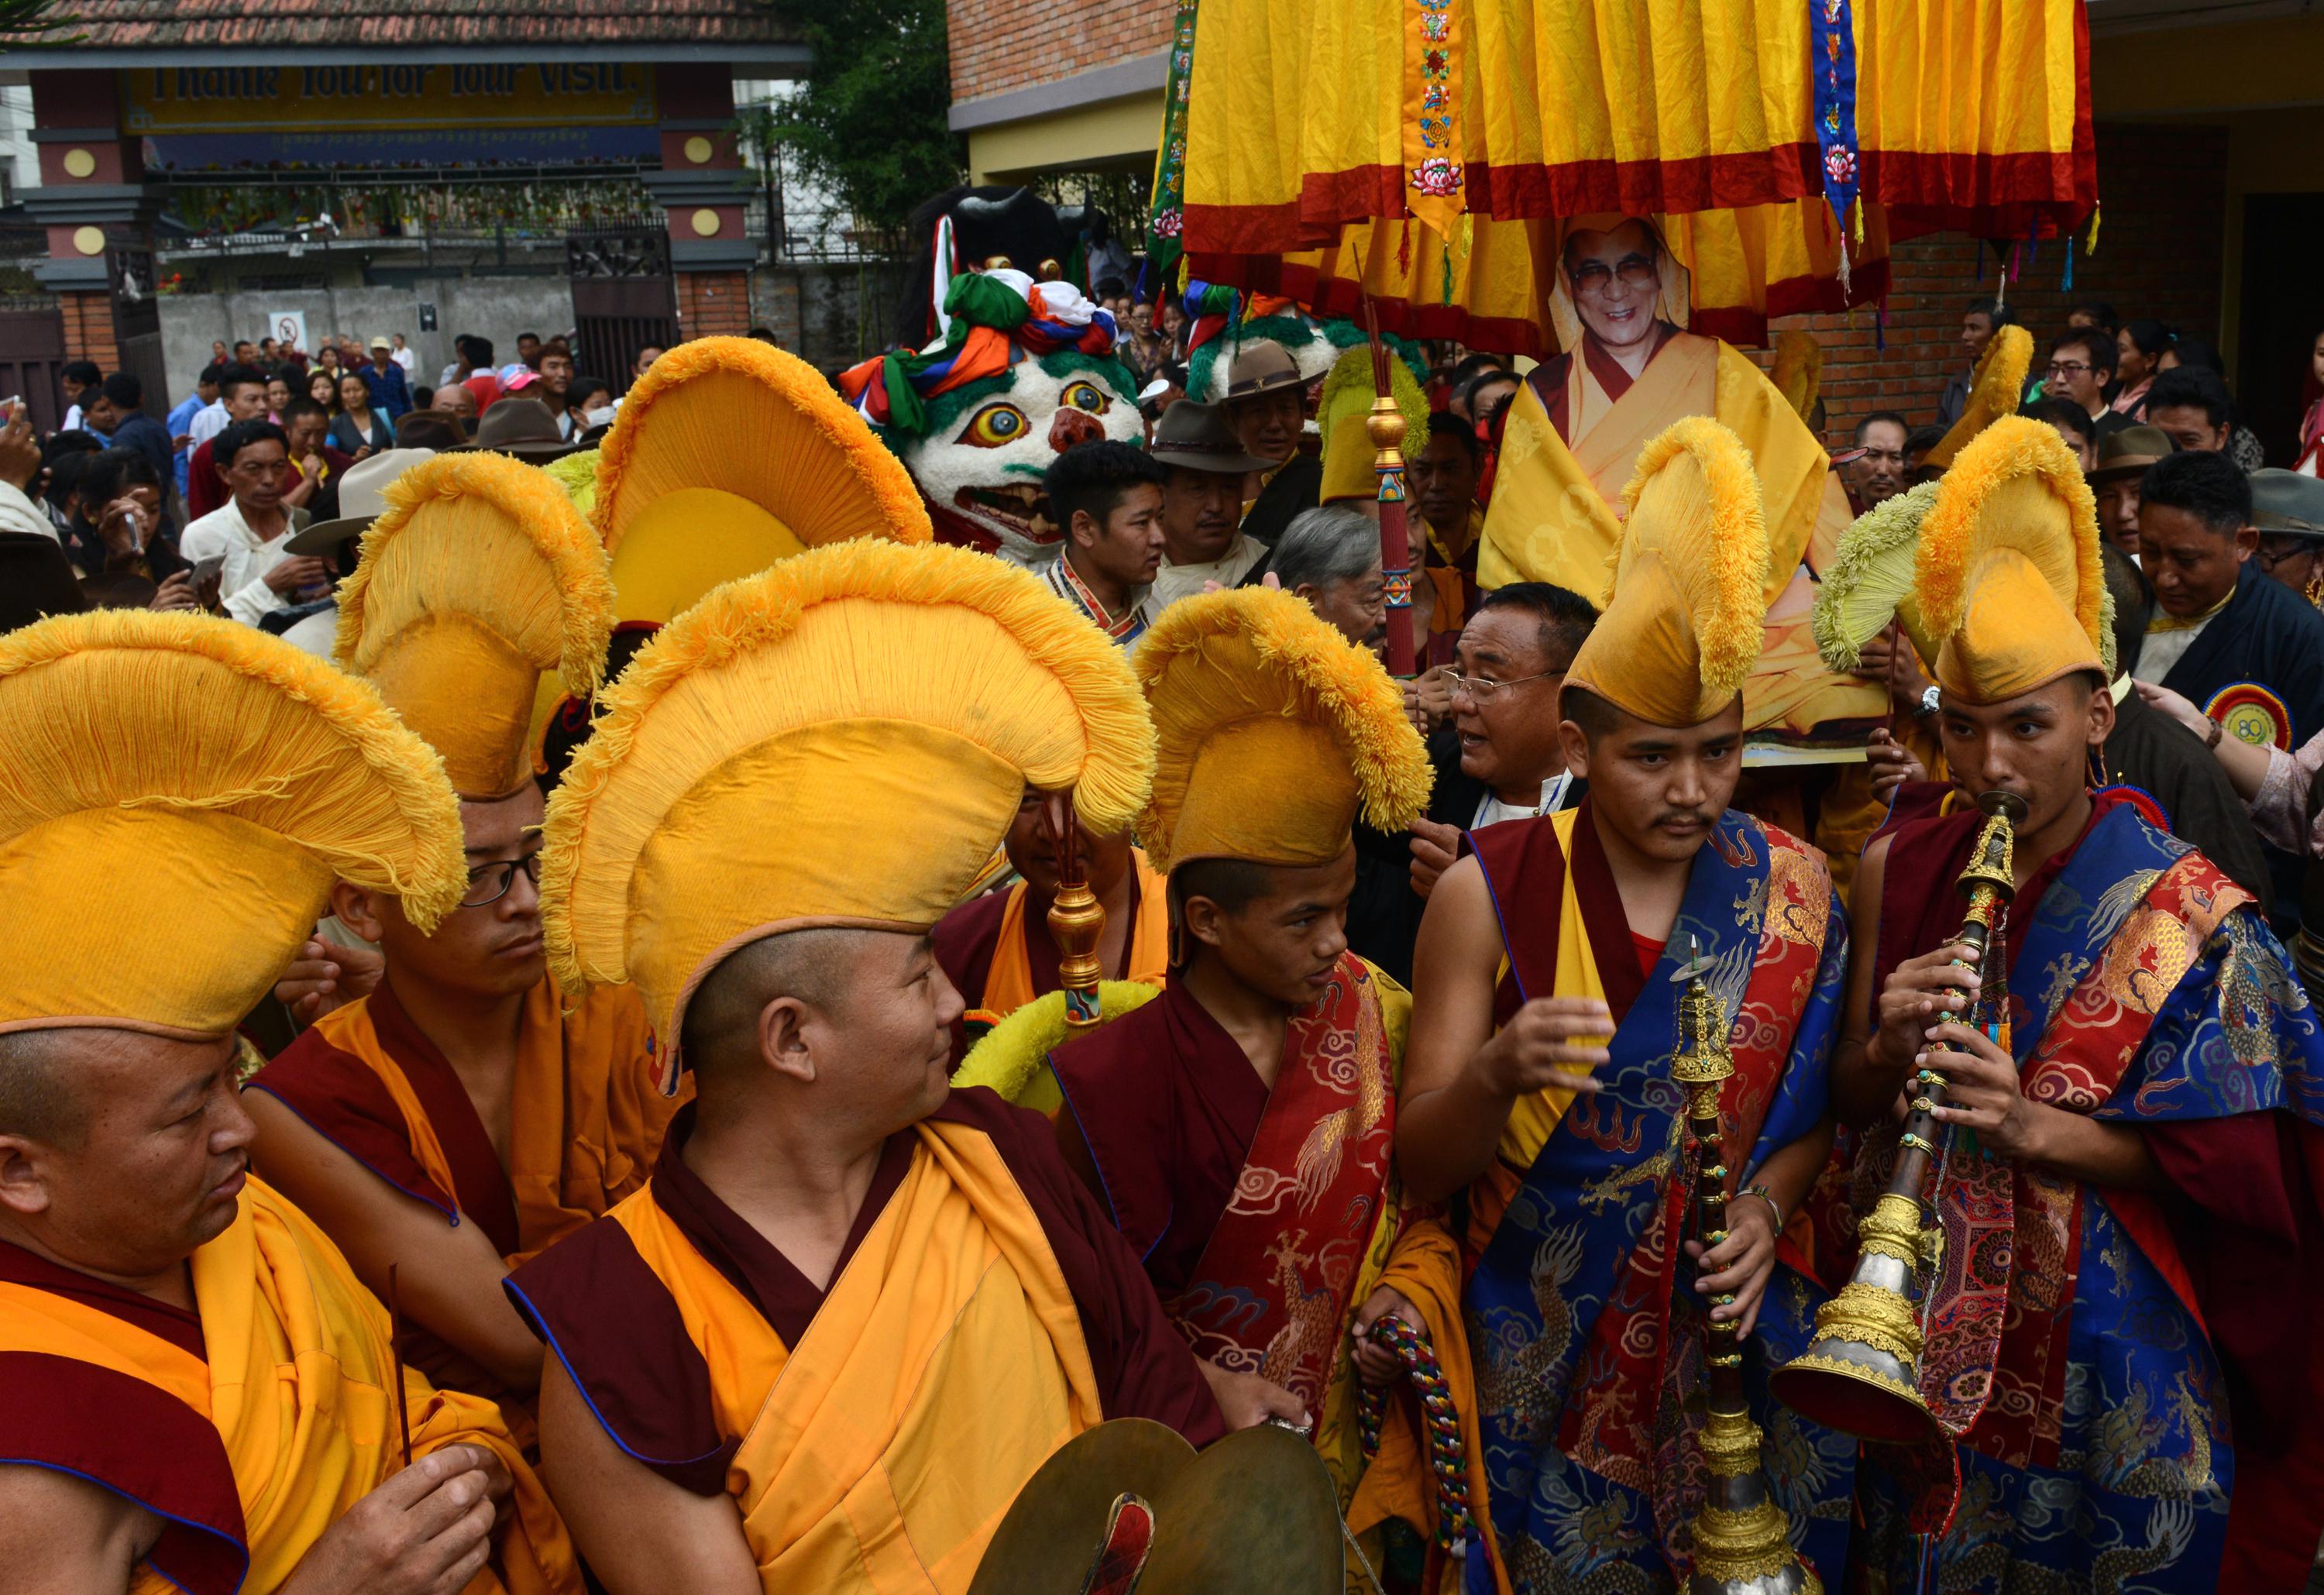 Monaci tibetani durante una cerimonia per l'anniversario della nascita del Dalai Lama, a Kathmandu, in Nepal (AFP)